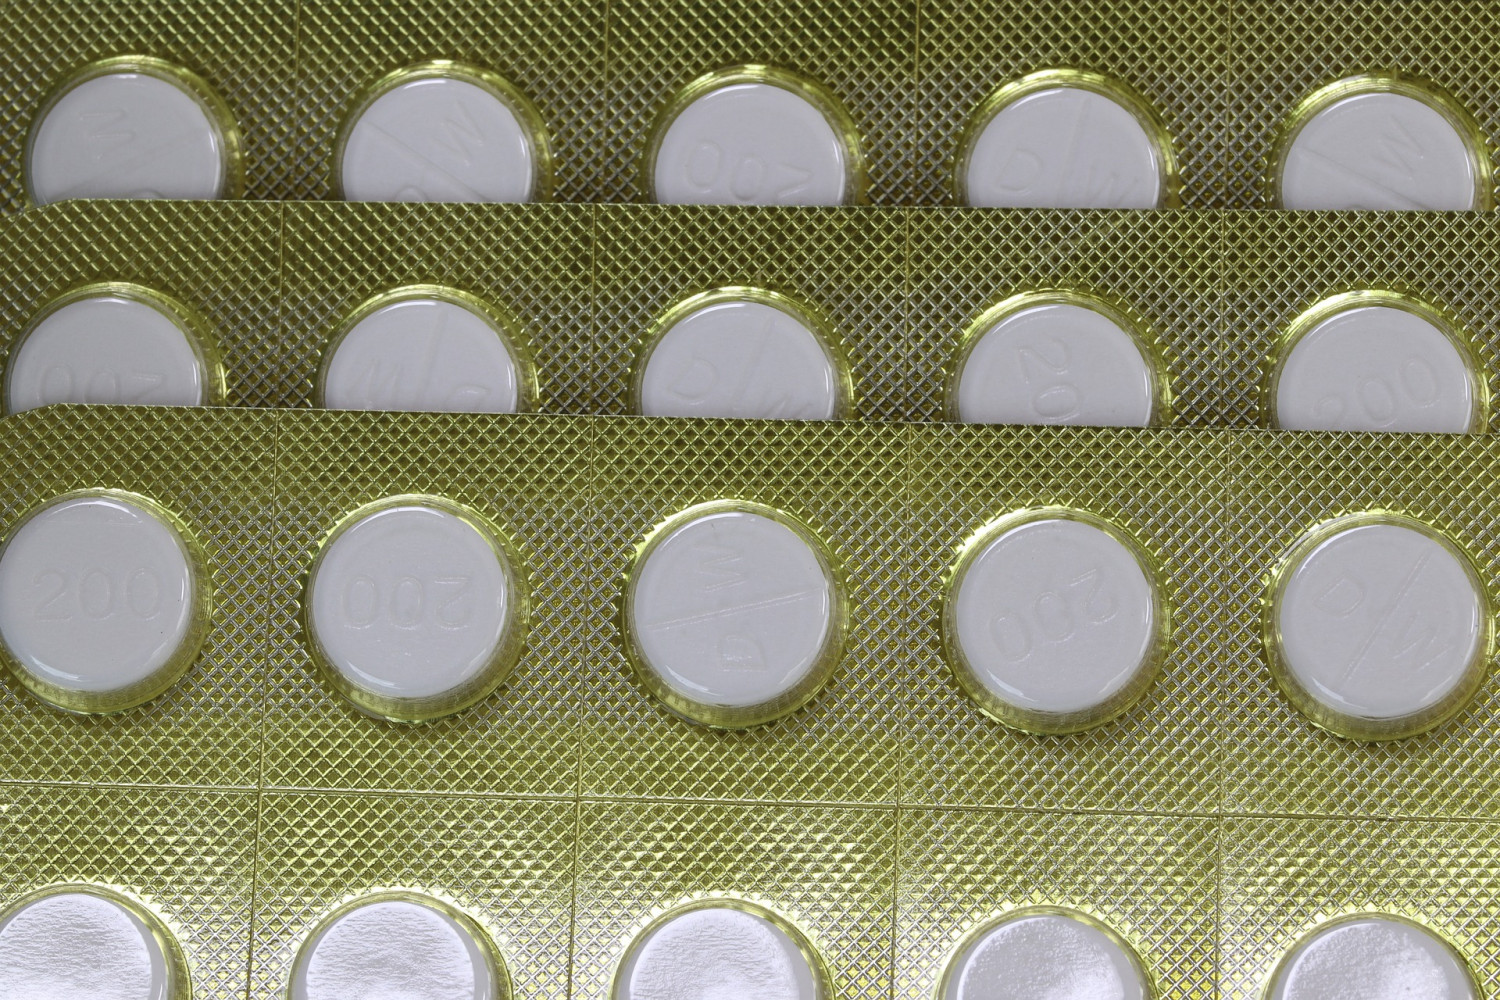 ФАС предложила внести изменения в механизм повышения цен на дефицитные препараты